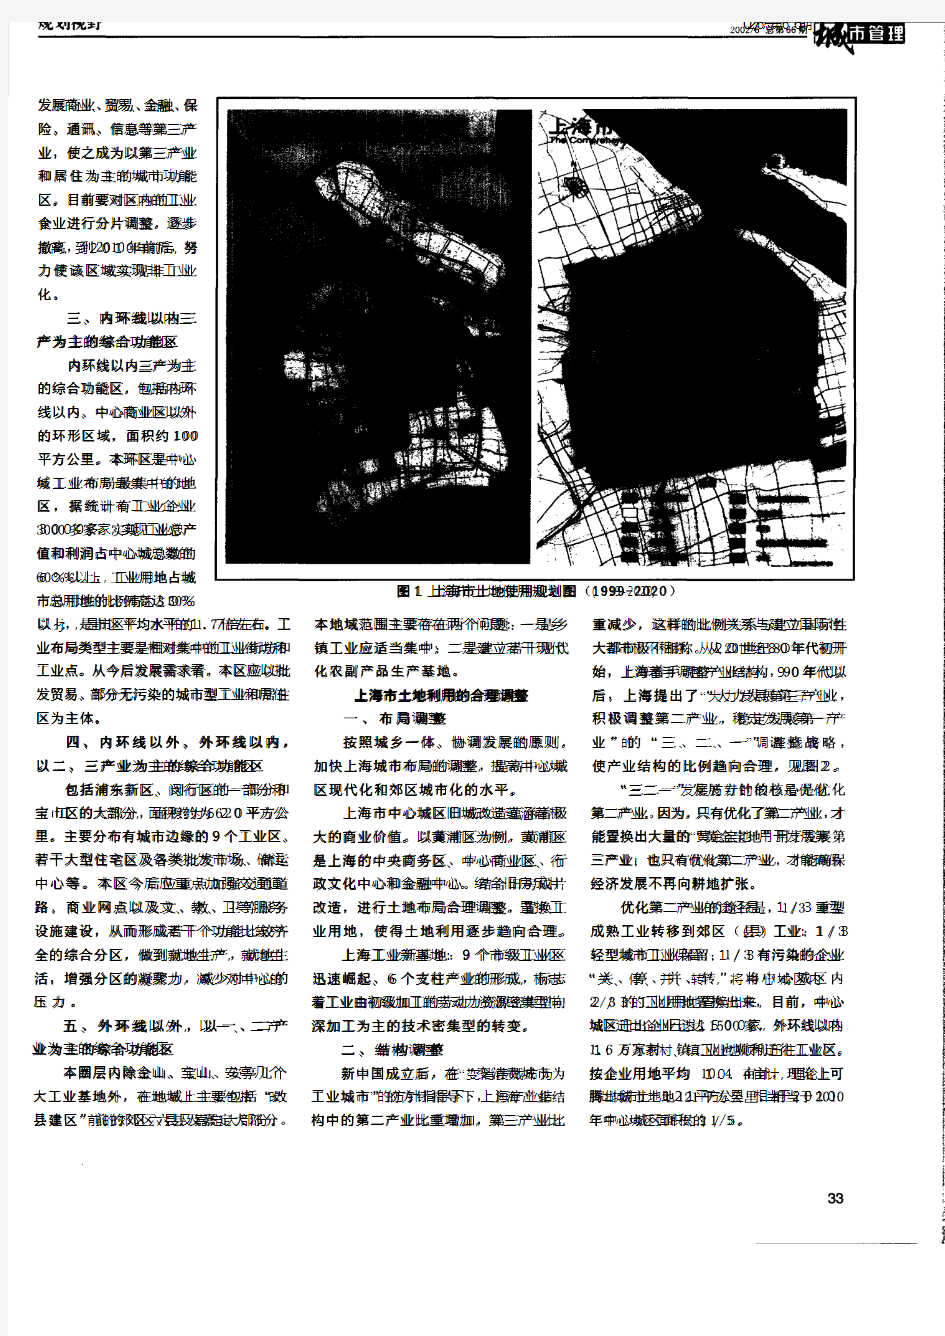 上海市土地利用现状分析